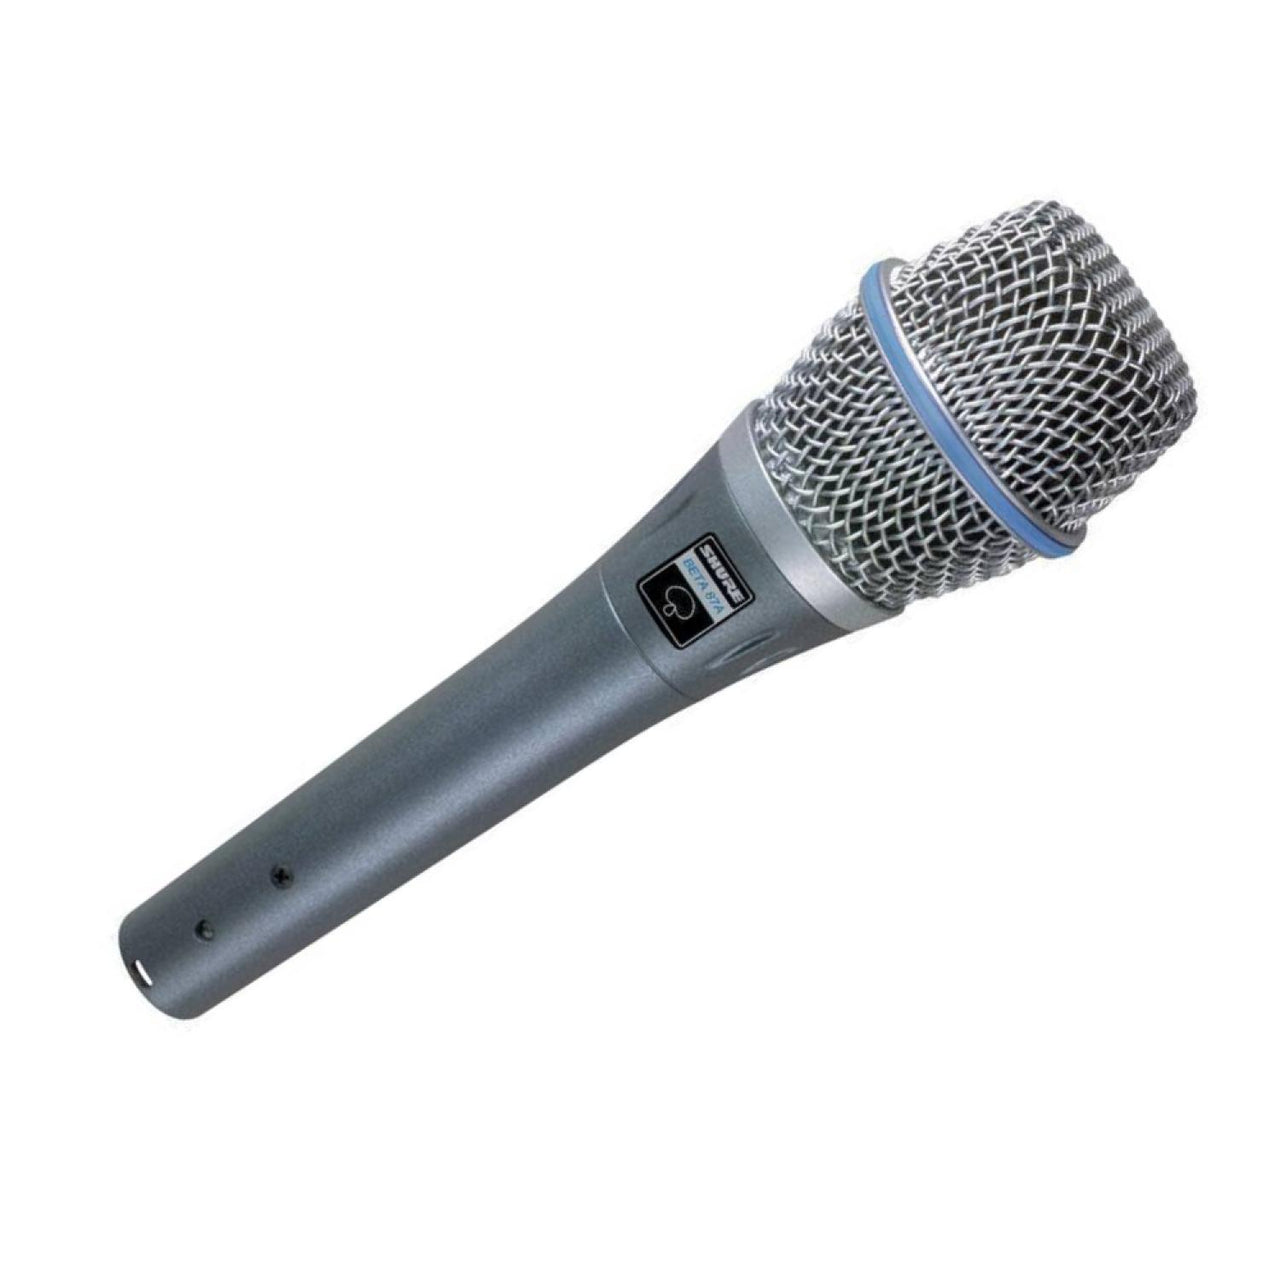 Microfono Shure Vocal Condensador Supercardioide, Beta-87a